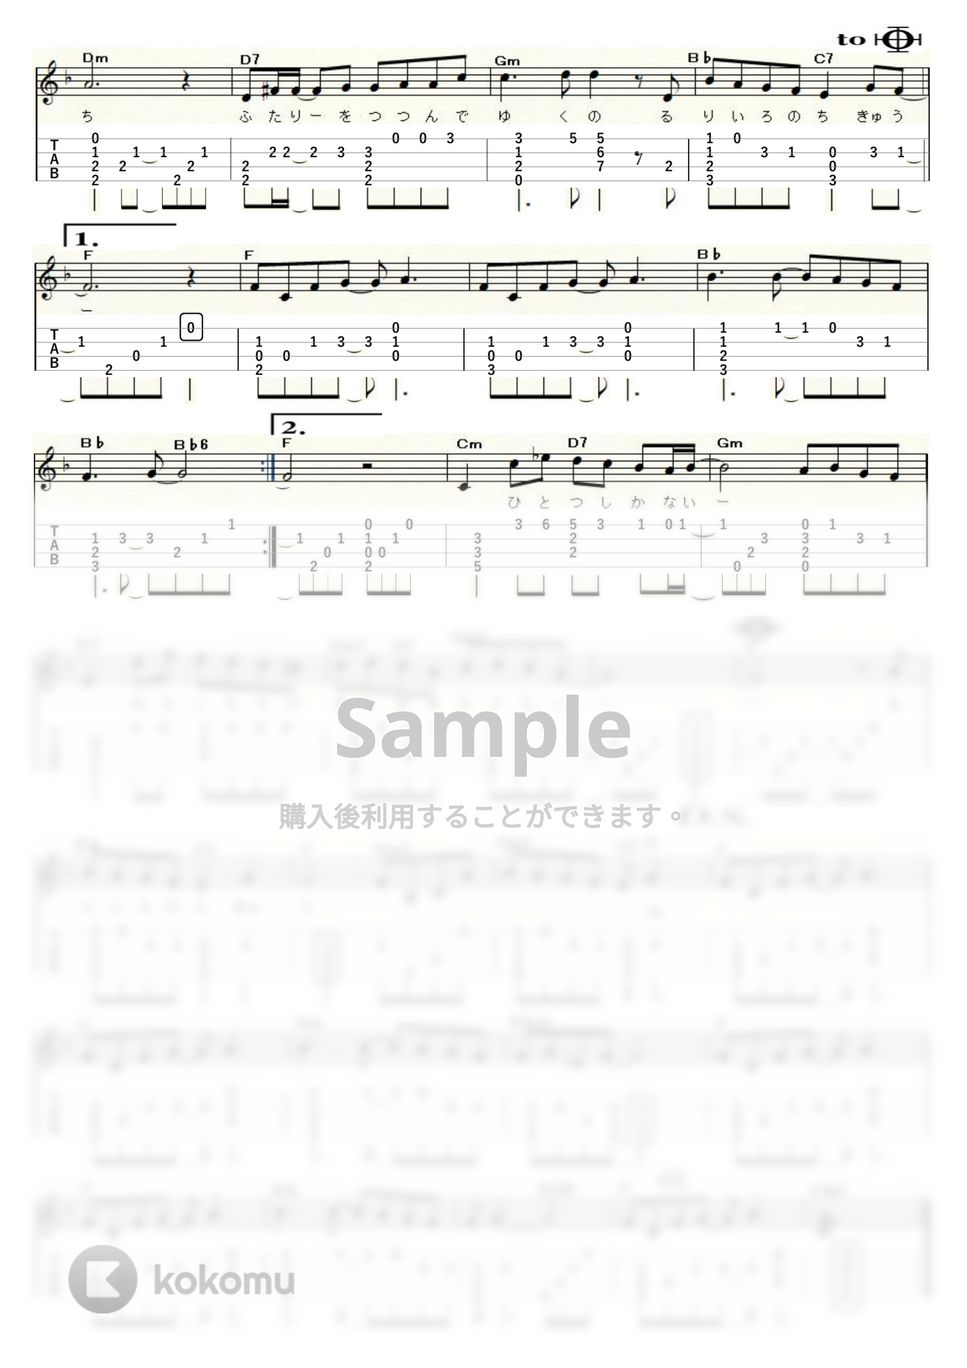 松田聖子 - 瑠璃色の地球 (Low-G) by ukulelepapa